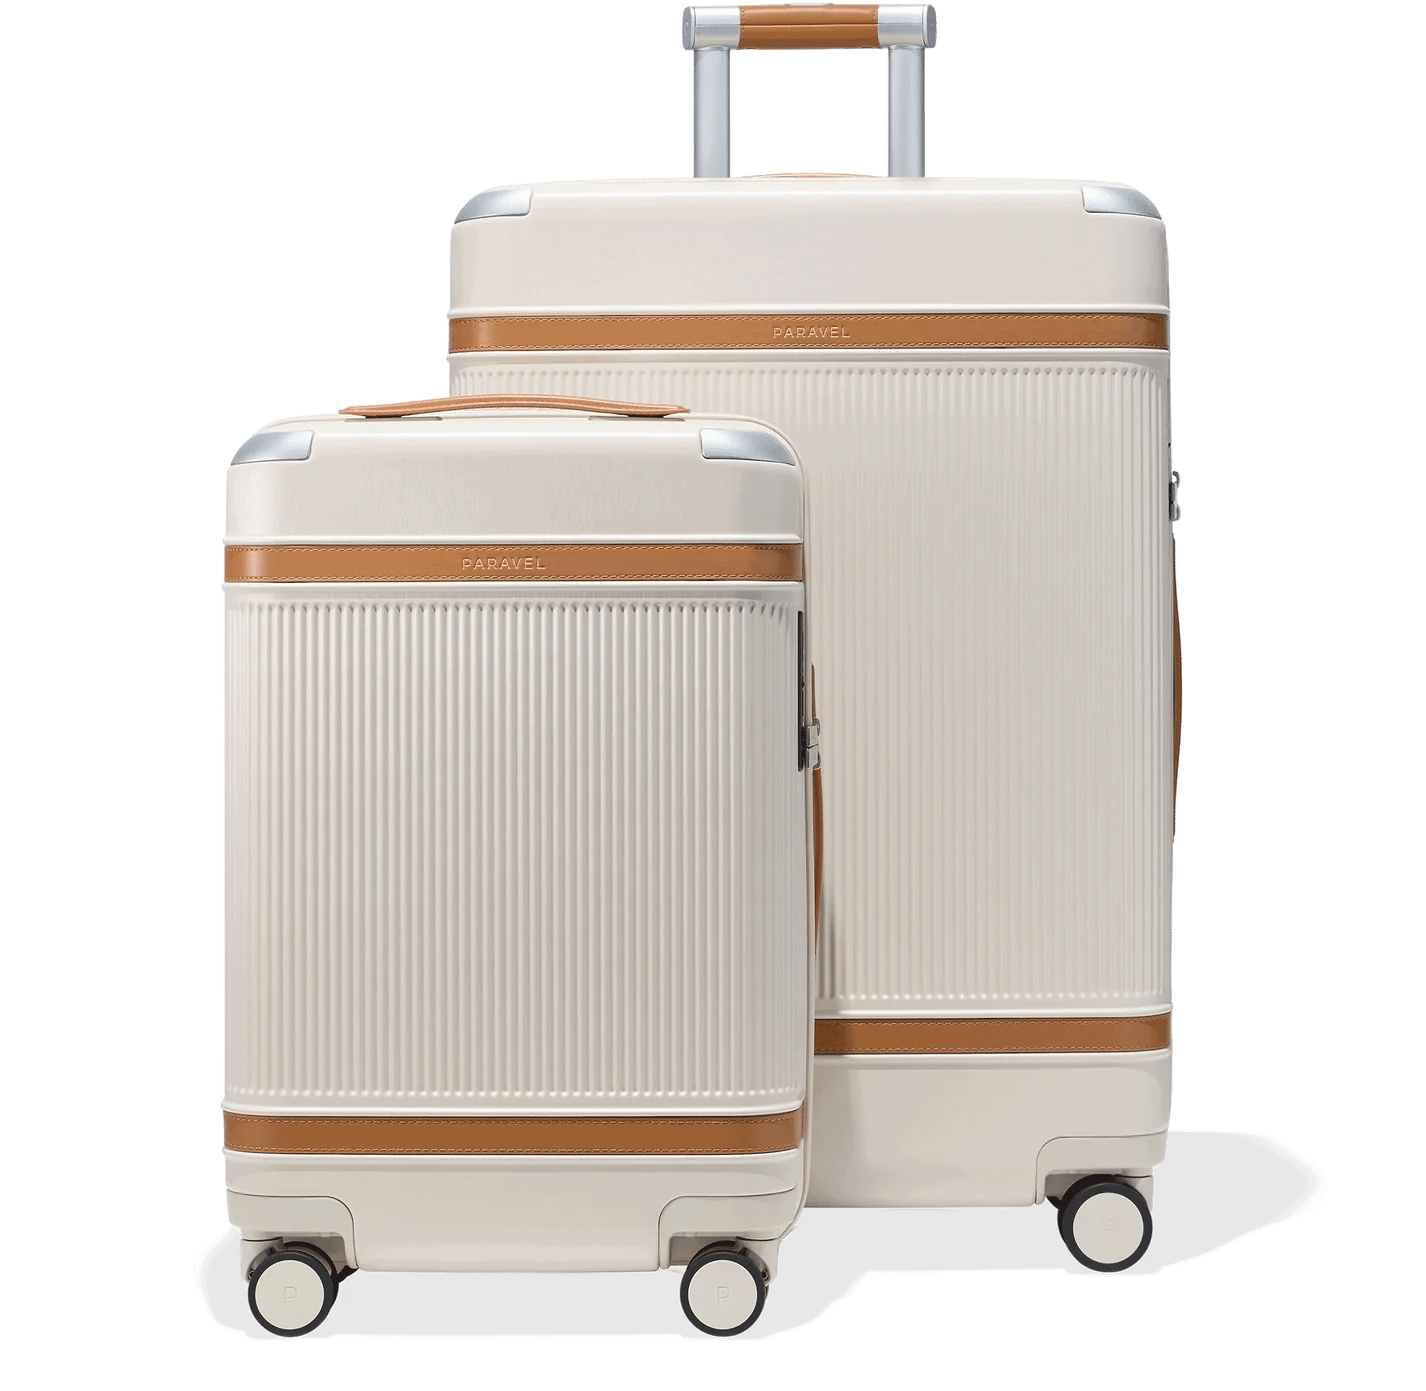 Paravel Aviator: Best Sustainable Luggage Set